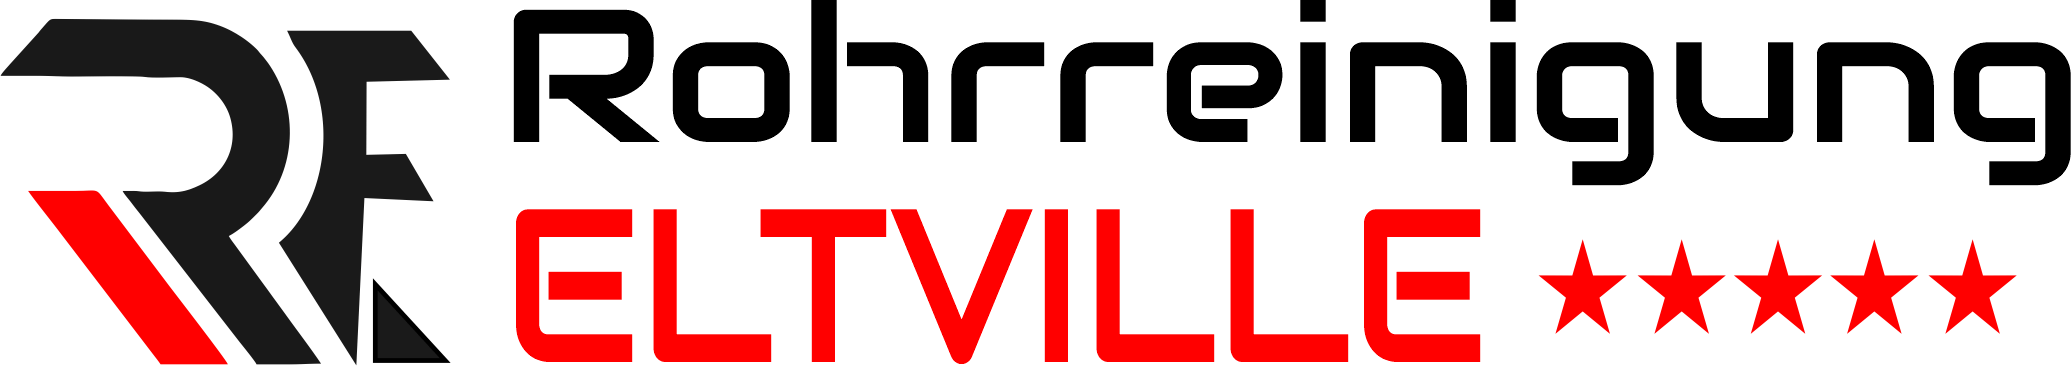 Rohrreinigung Eltville Logo